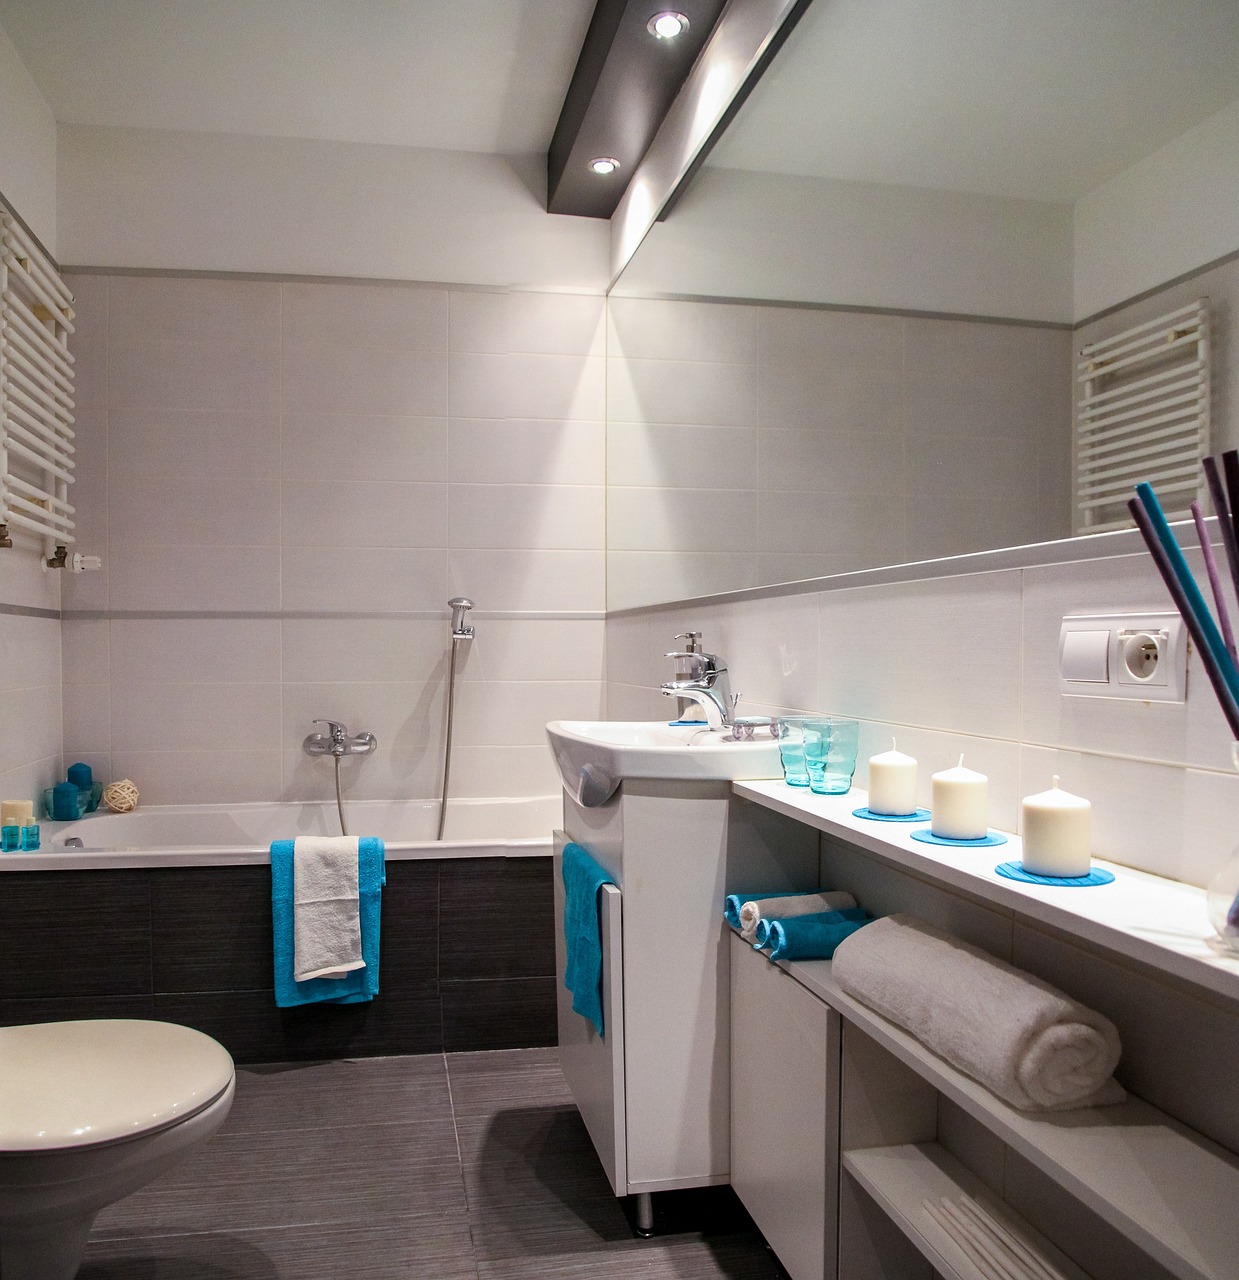 Remodel łazienki w domu: Najlepszy sposób, aby Twój dom wyglądał jak nowy